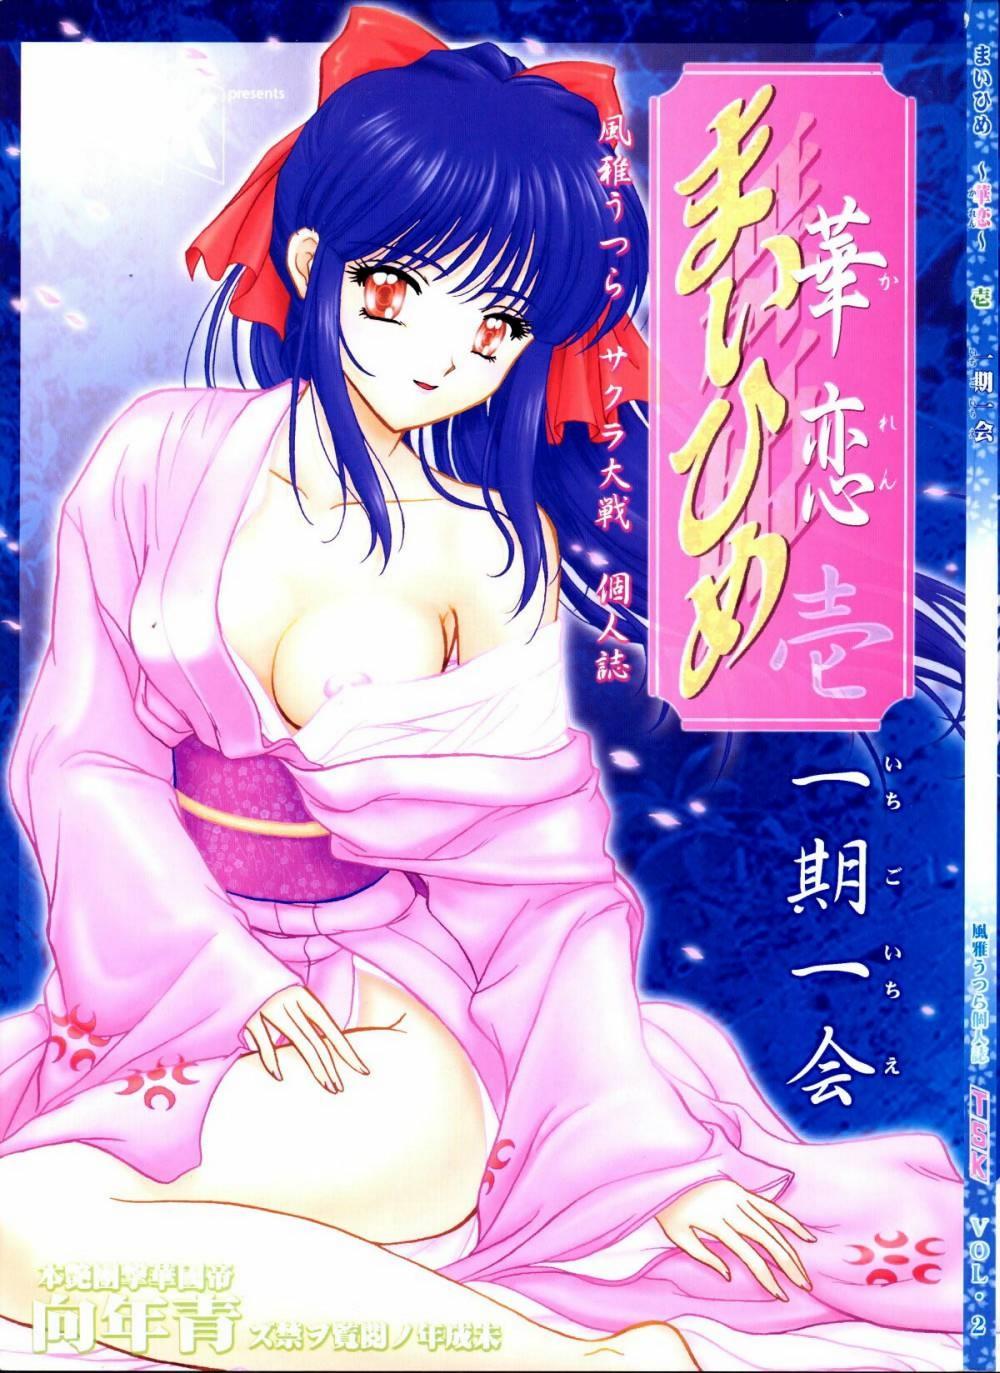 Exibicionismo [TSK] Mai Hime ~Karen~ 1 Ichigo Ichie (Sakura Wars) - Sakura taisen Loira - Picture 1